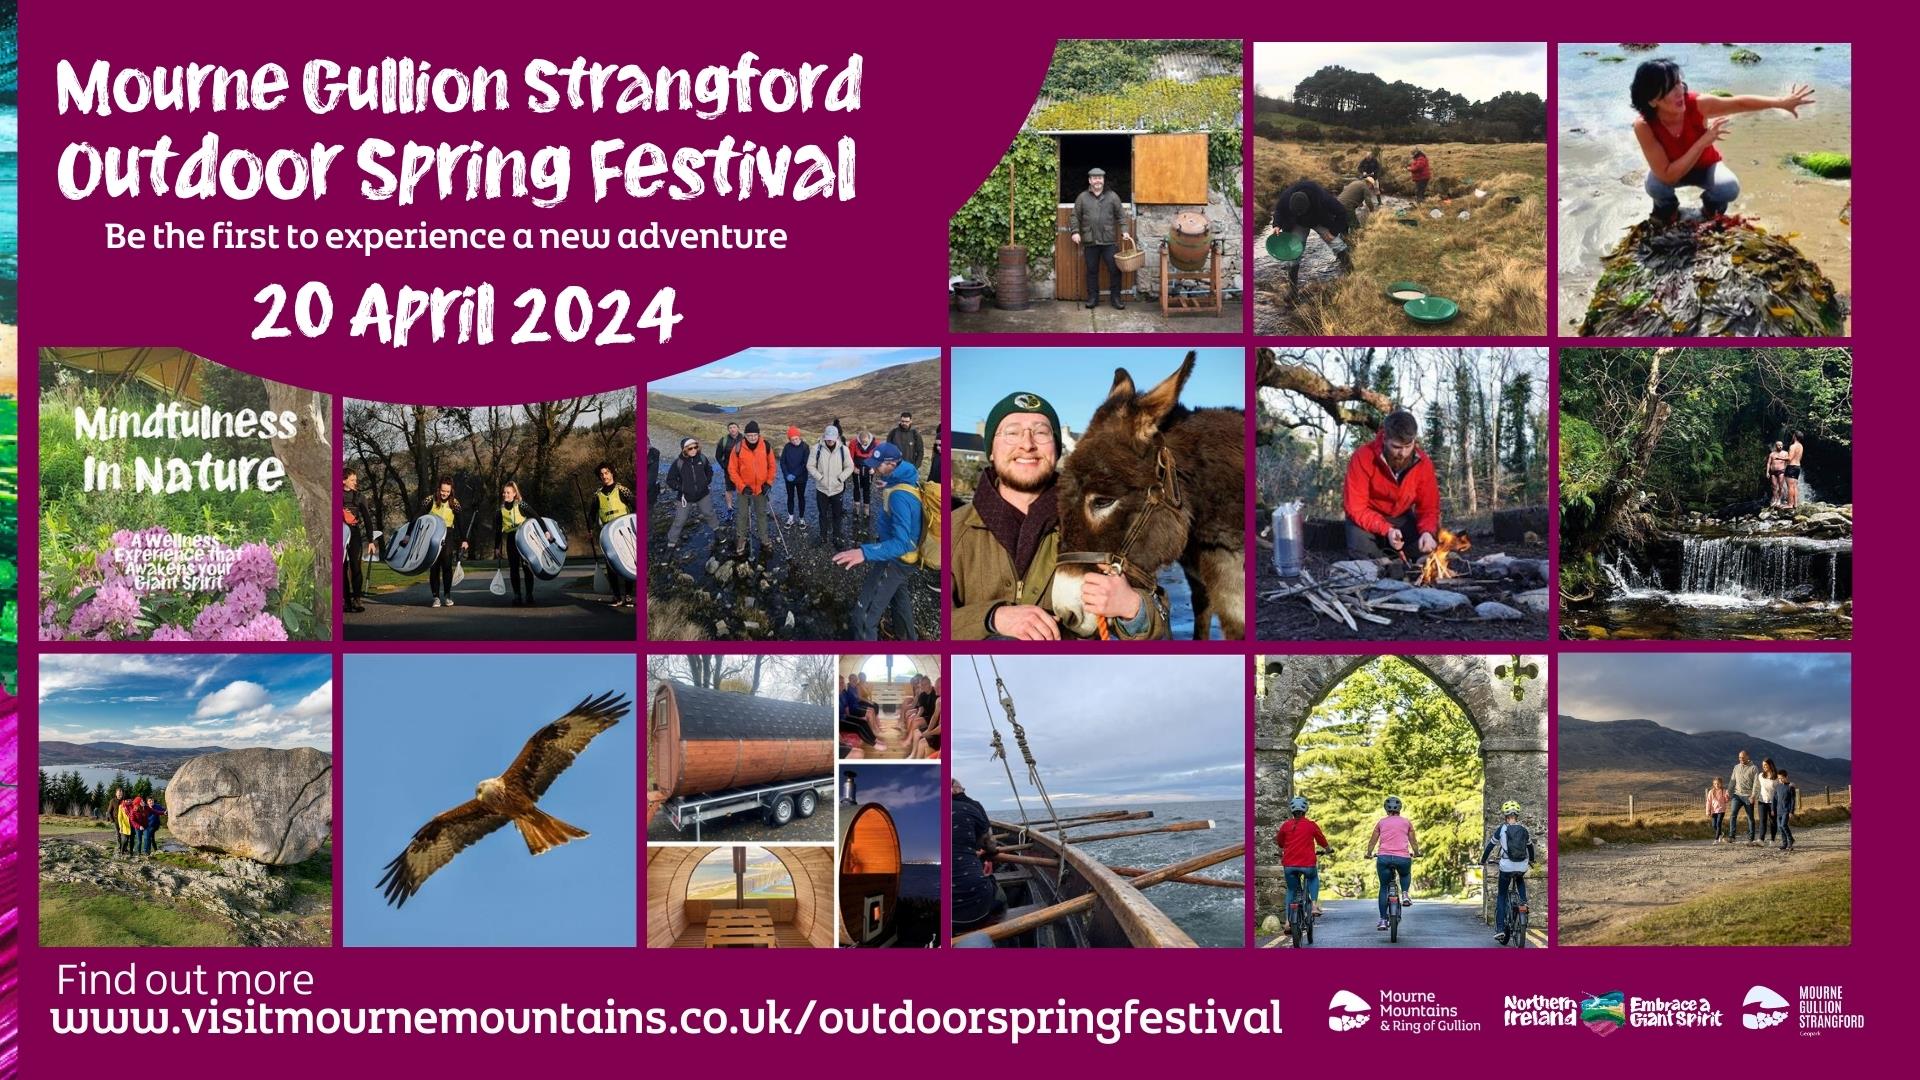 Mourne Gullion Strangford Outdoor Spring Festival